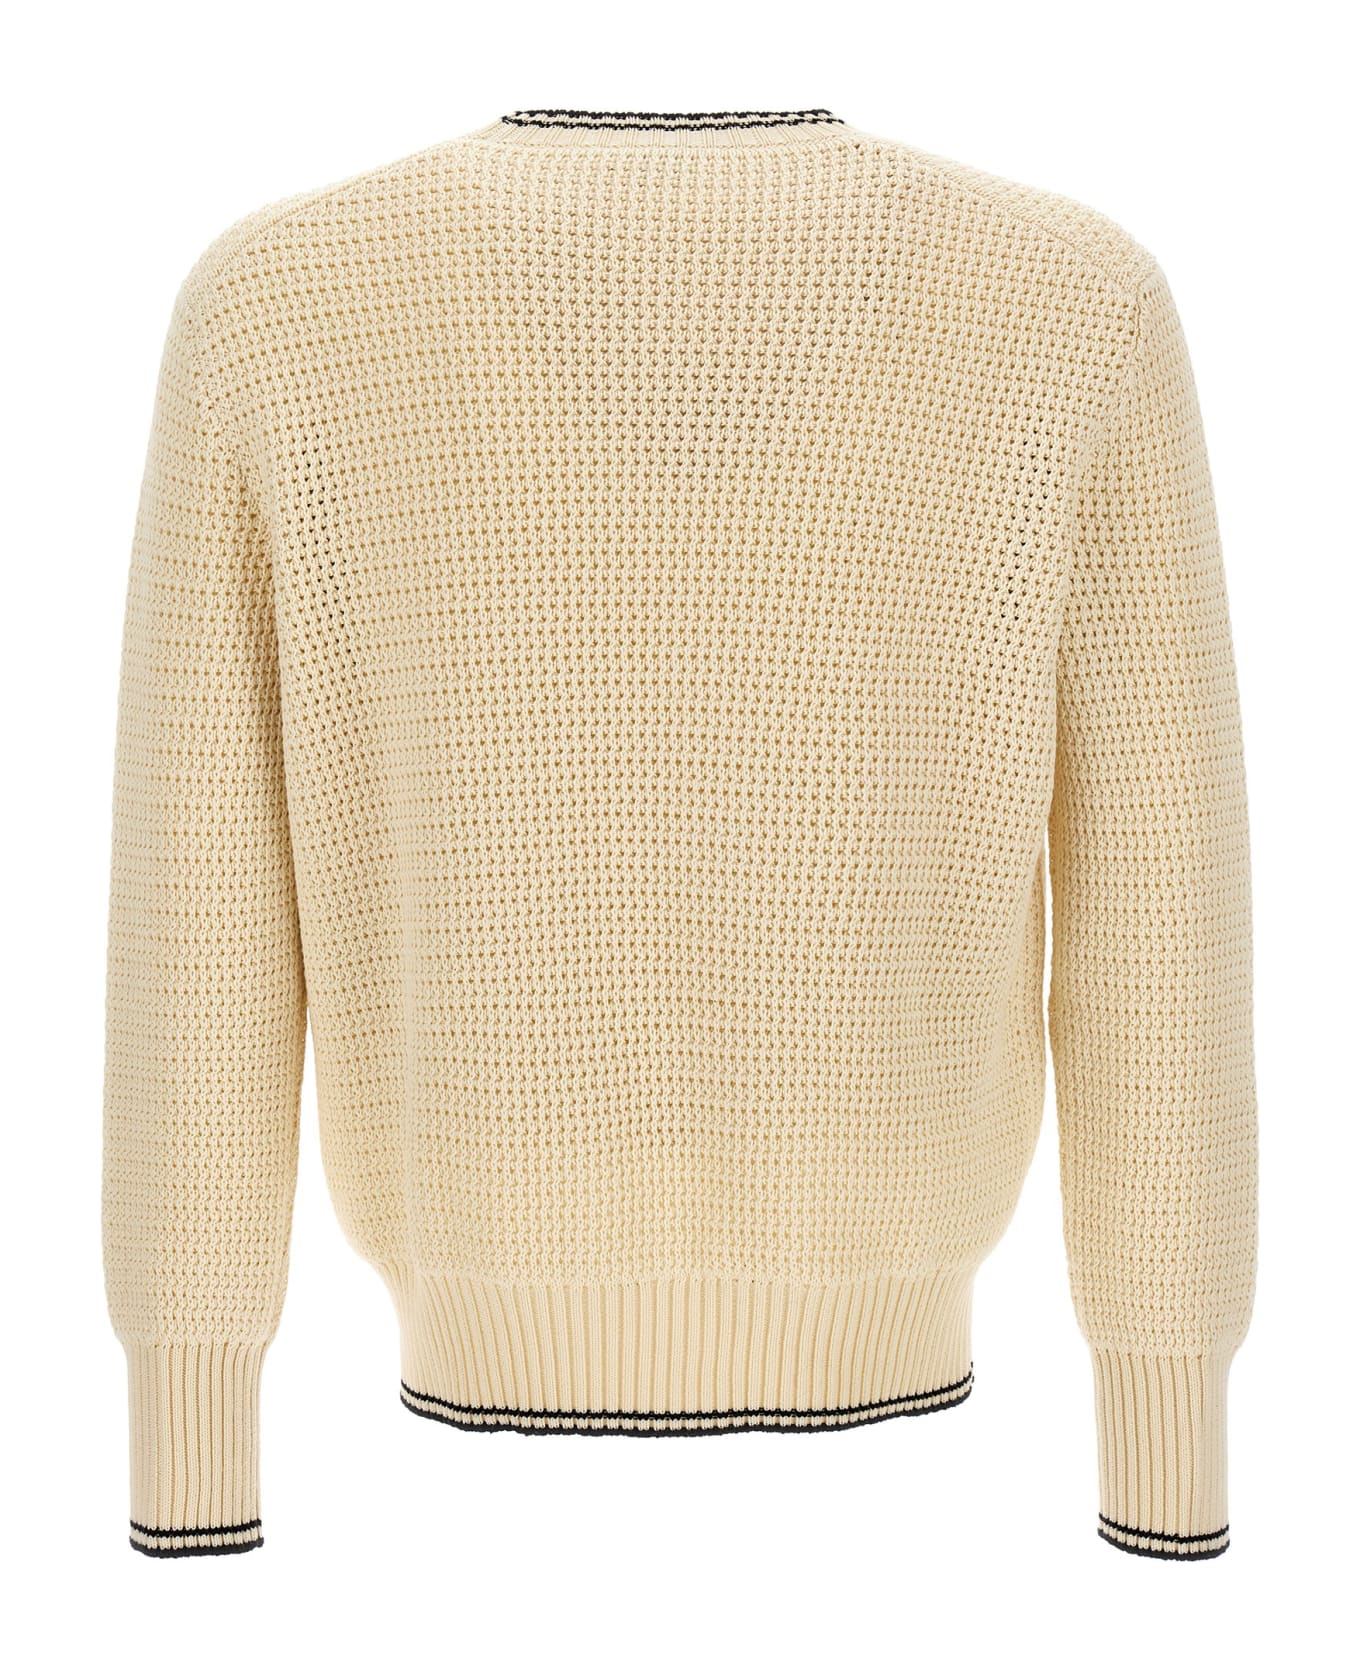 Alexander McQueen Logo Knitted Sweater - Cream